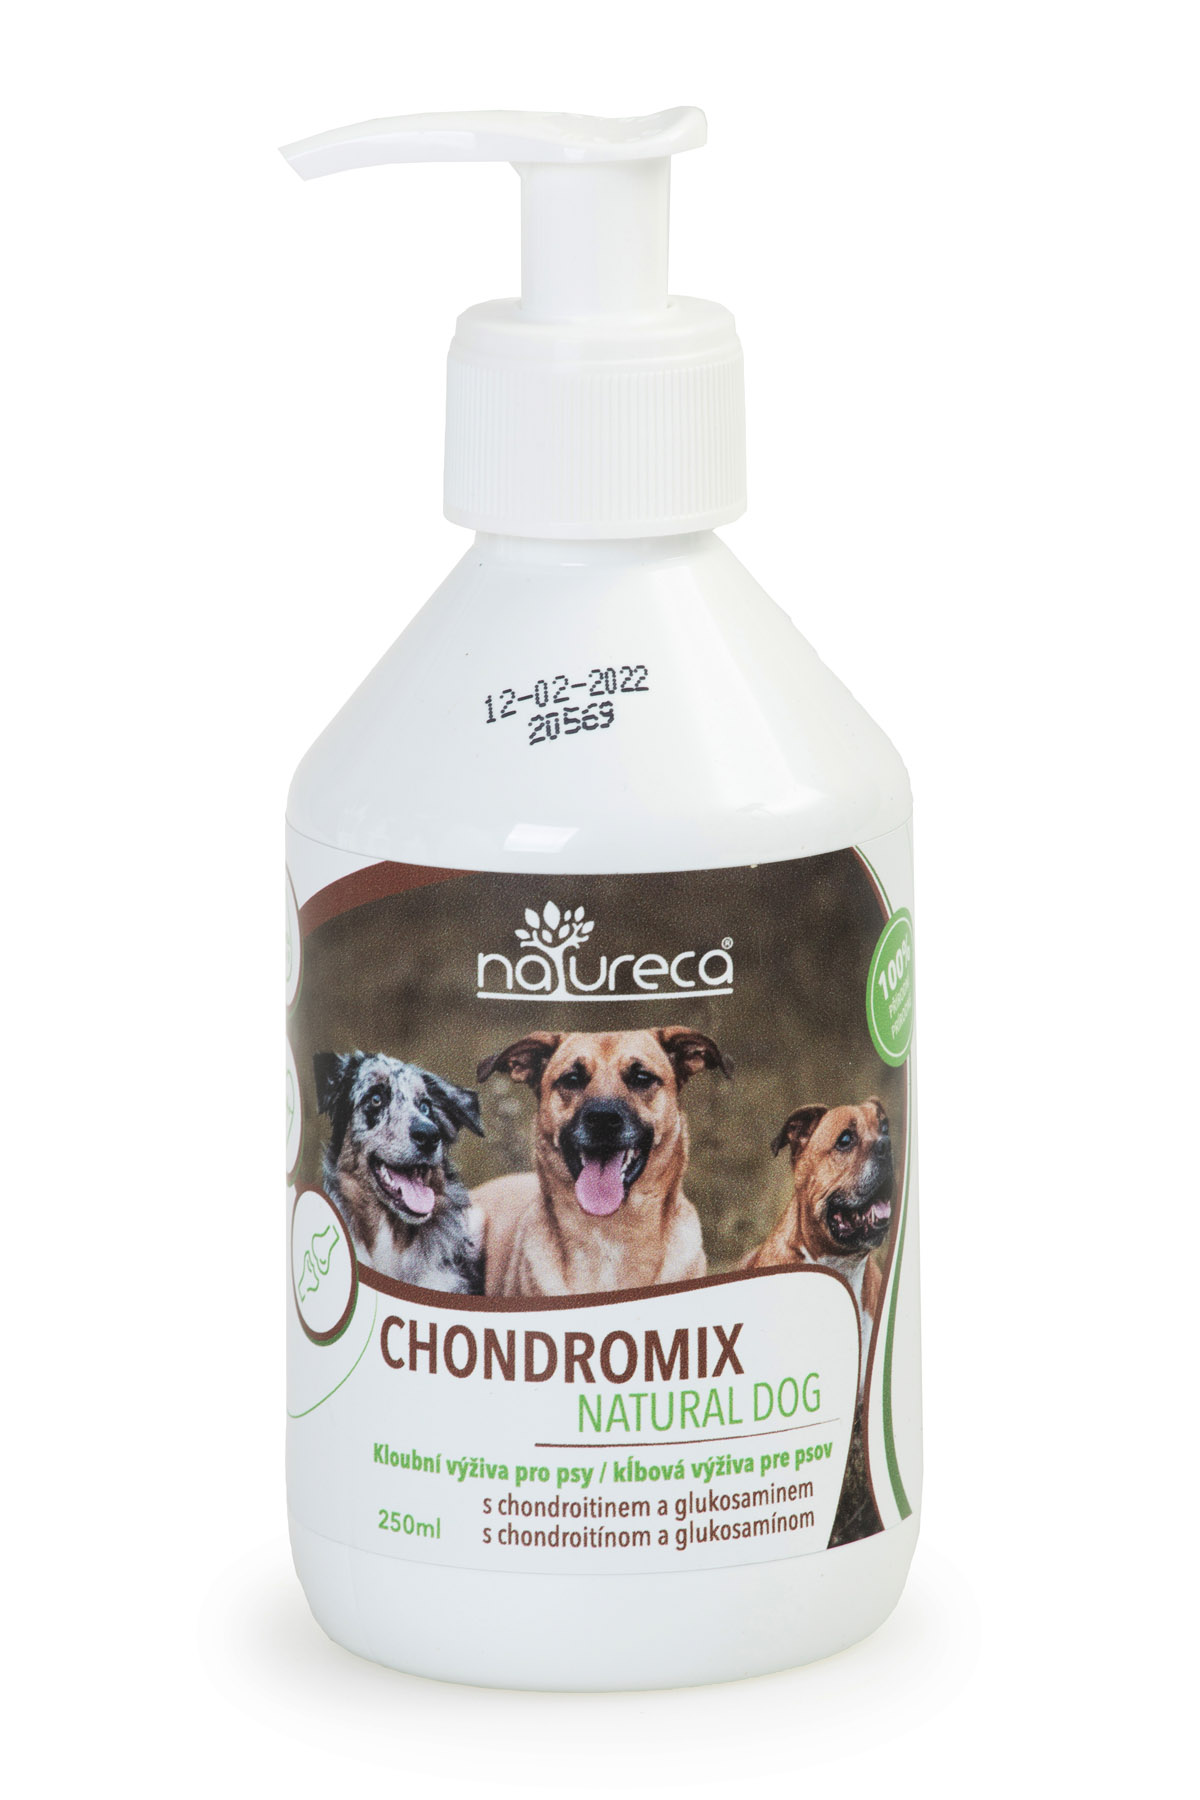 Chondromix Natural Dog 250ml, kloubní výživa